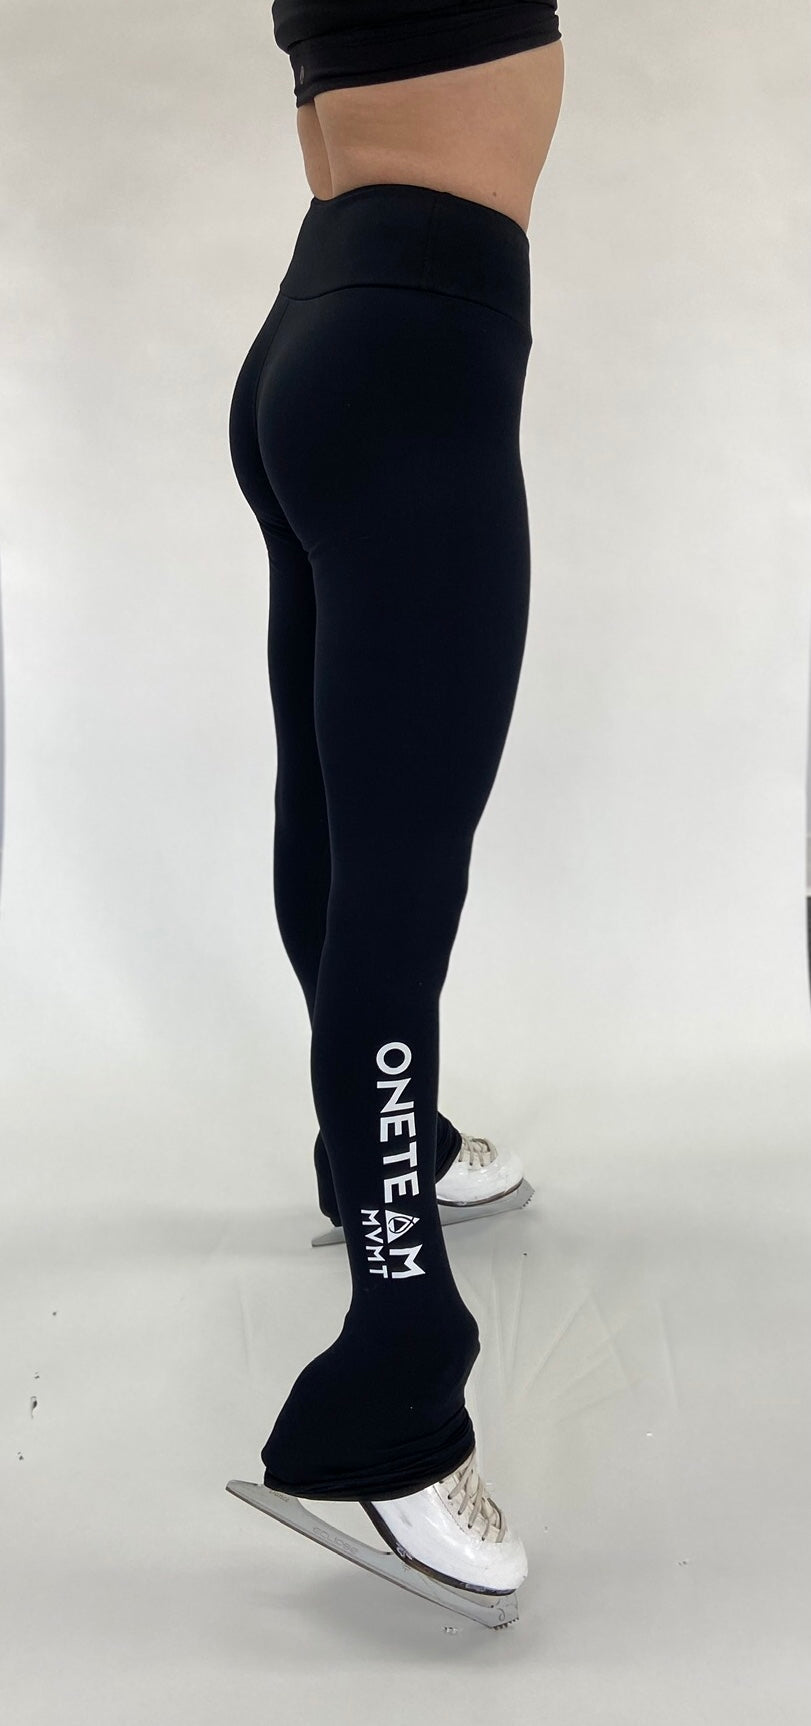 OTM Performance Legging - Basic Black ($CAD)